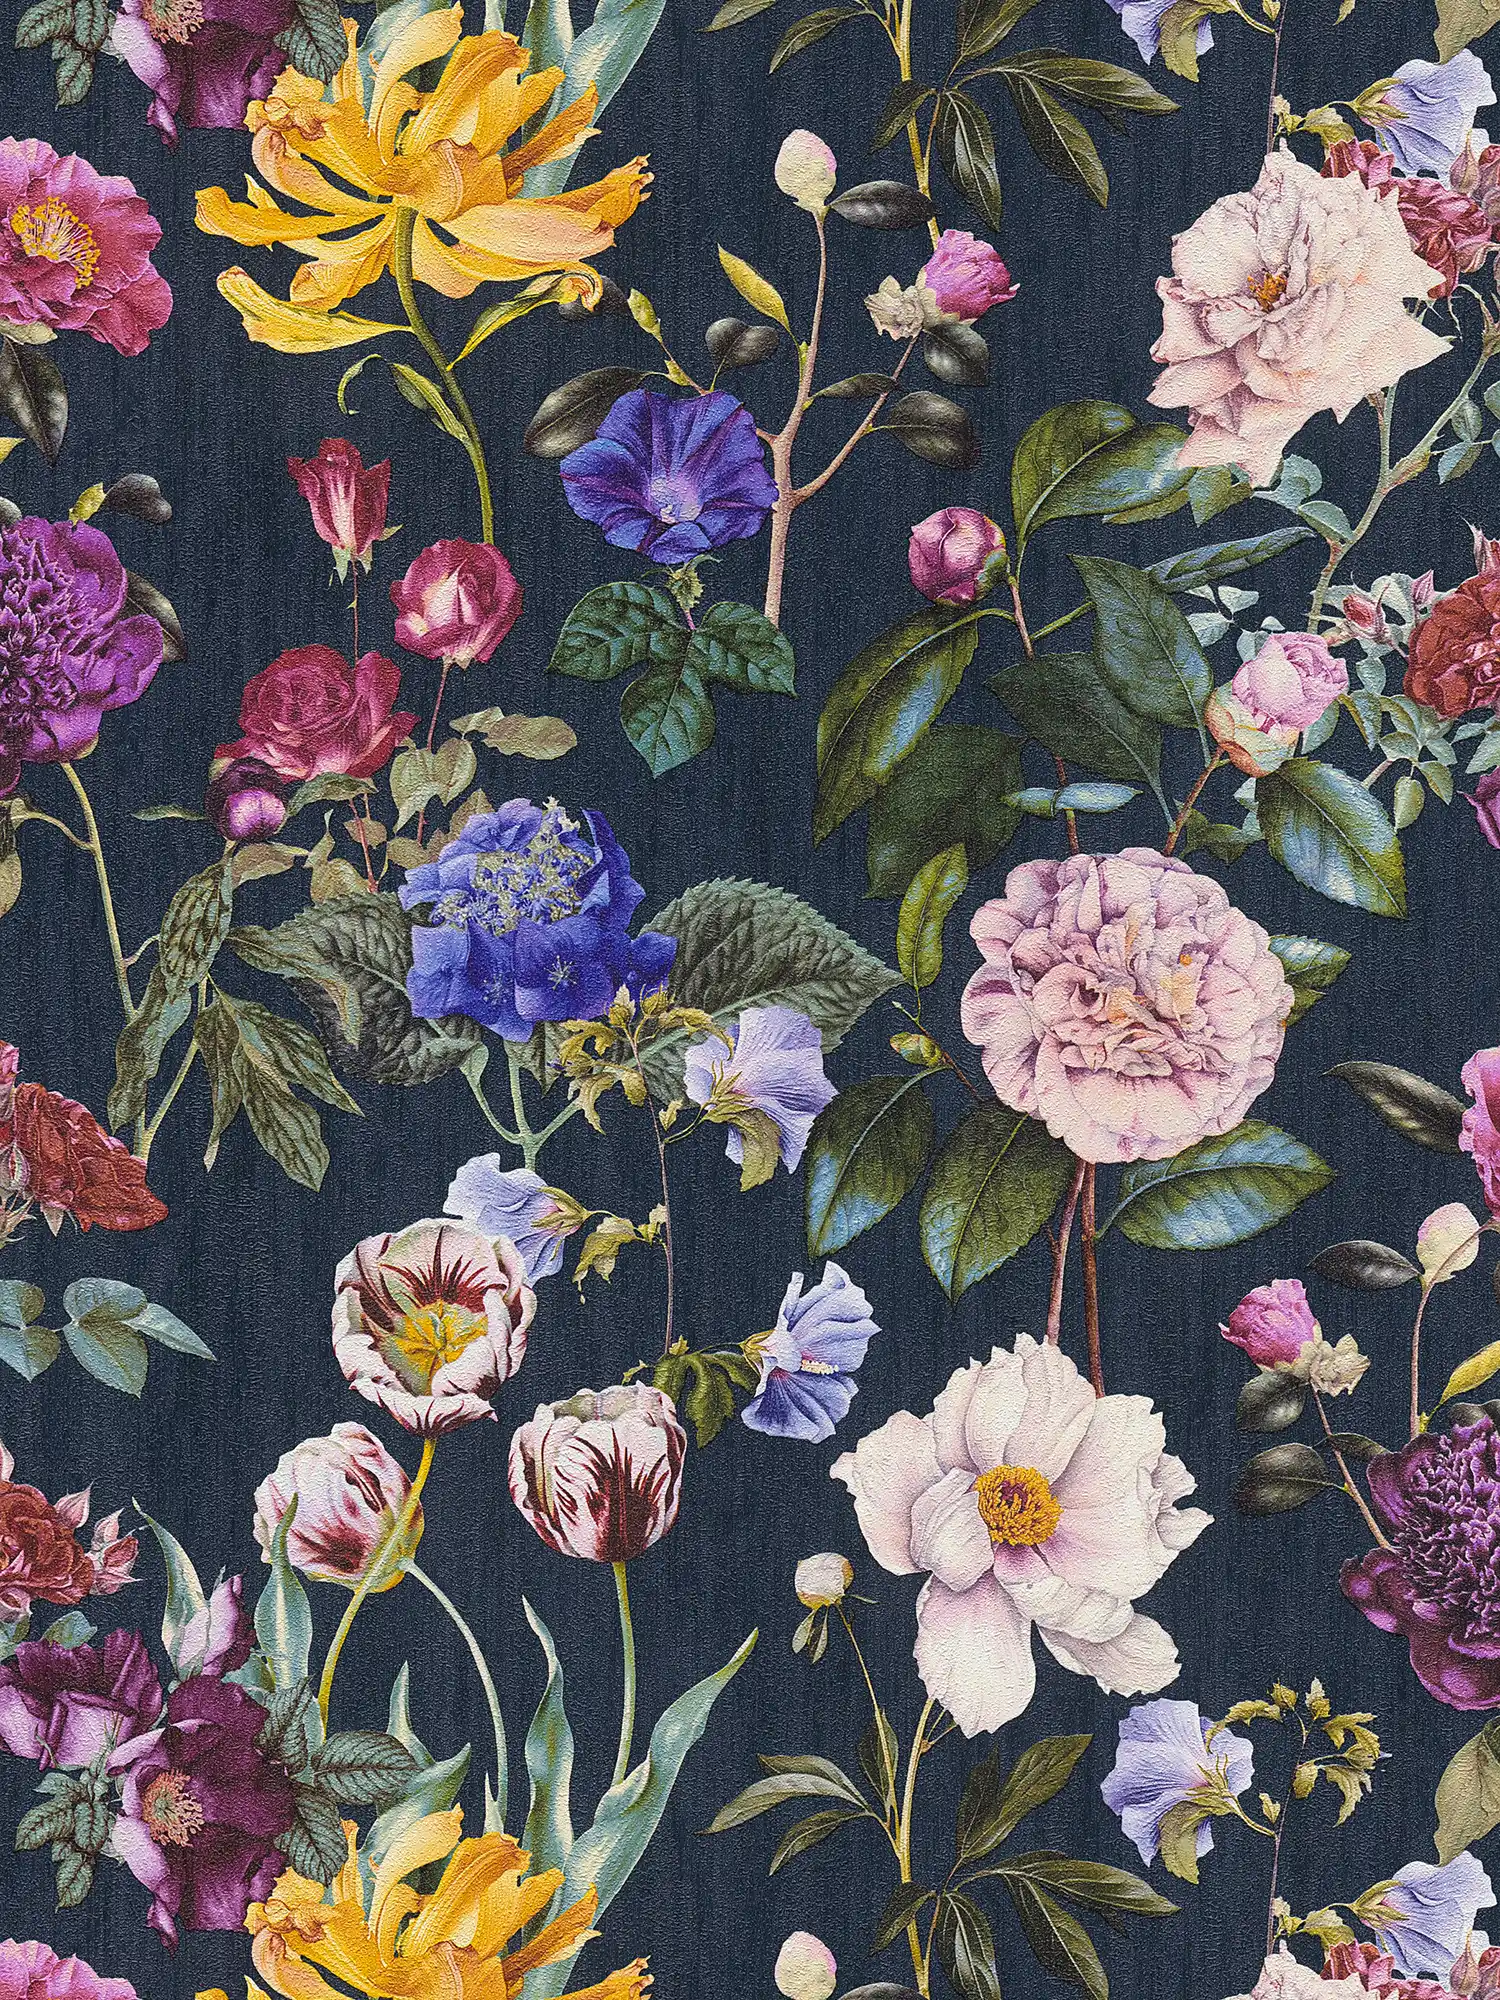 Papier peint fleuri avec des fleurs aux couleurs vives - bleu, vert, rouge
